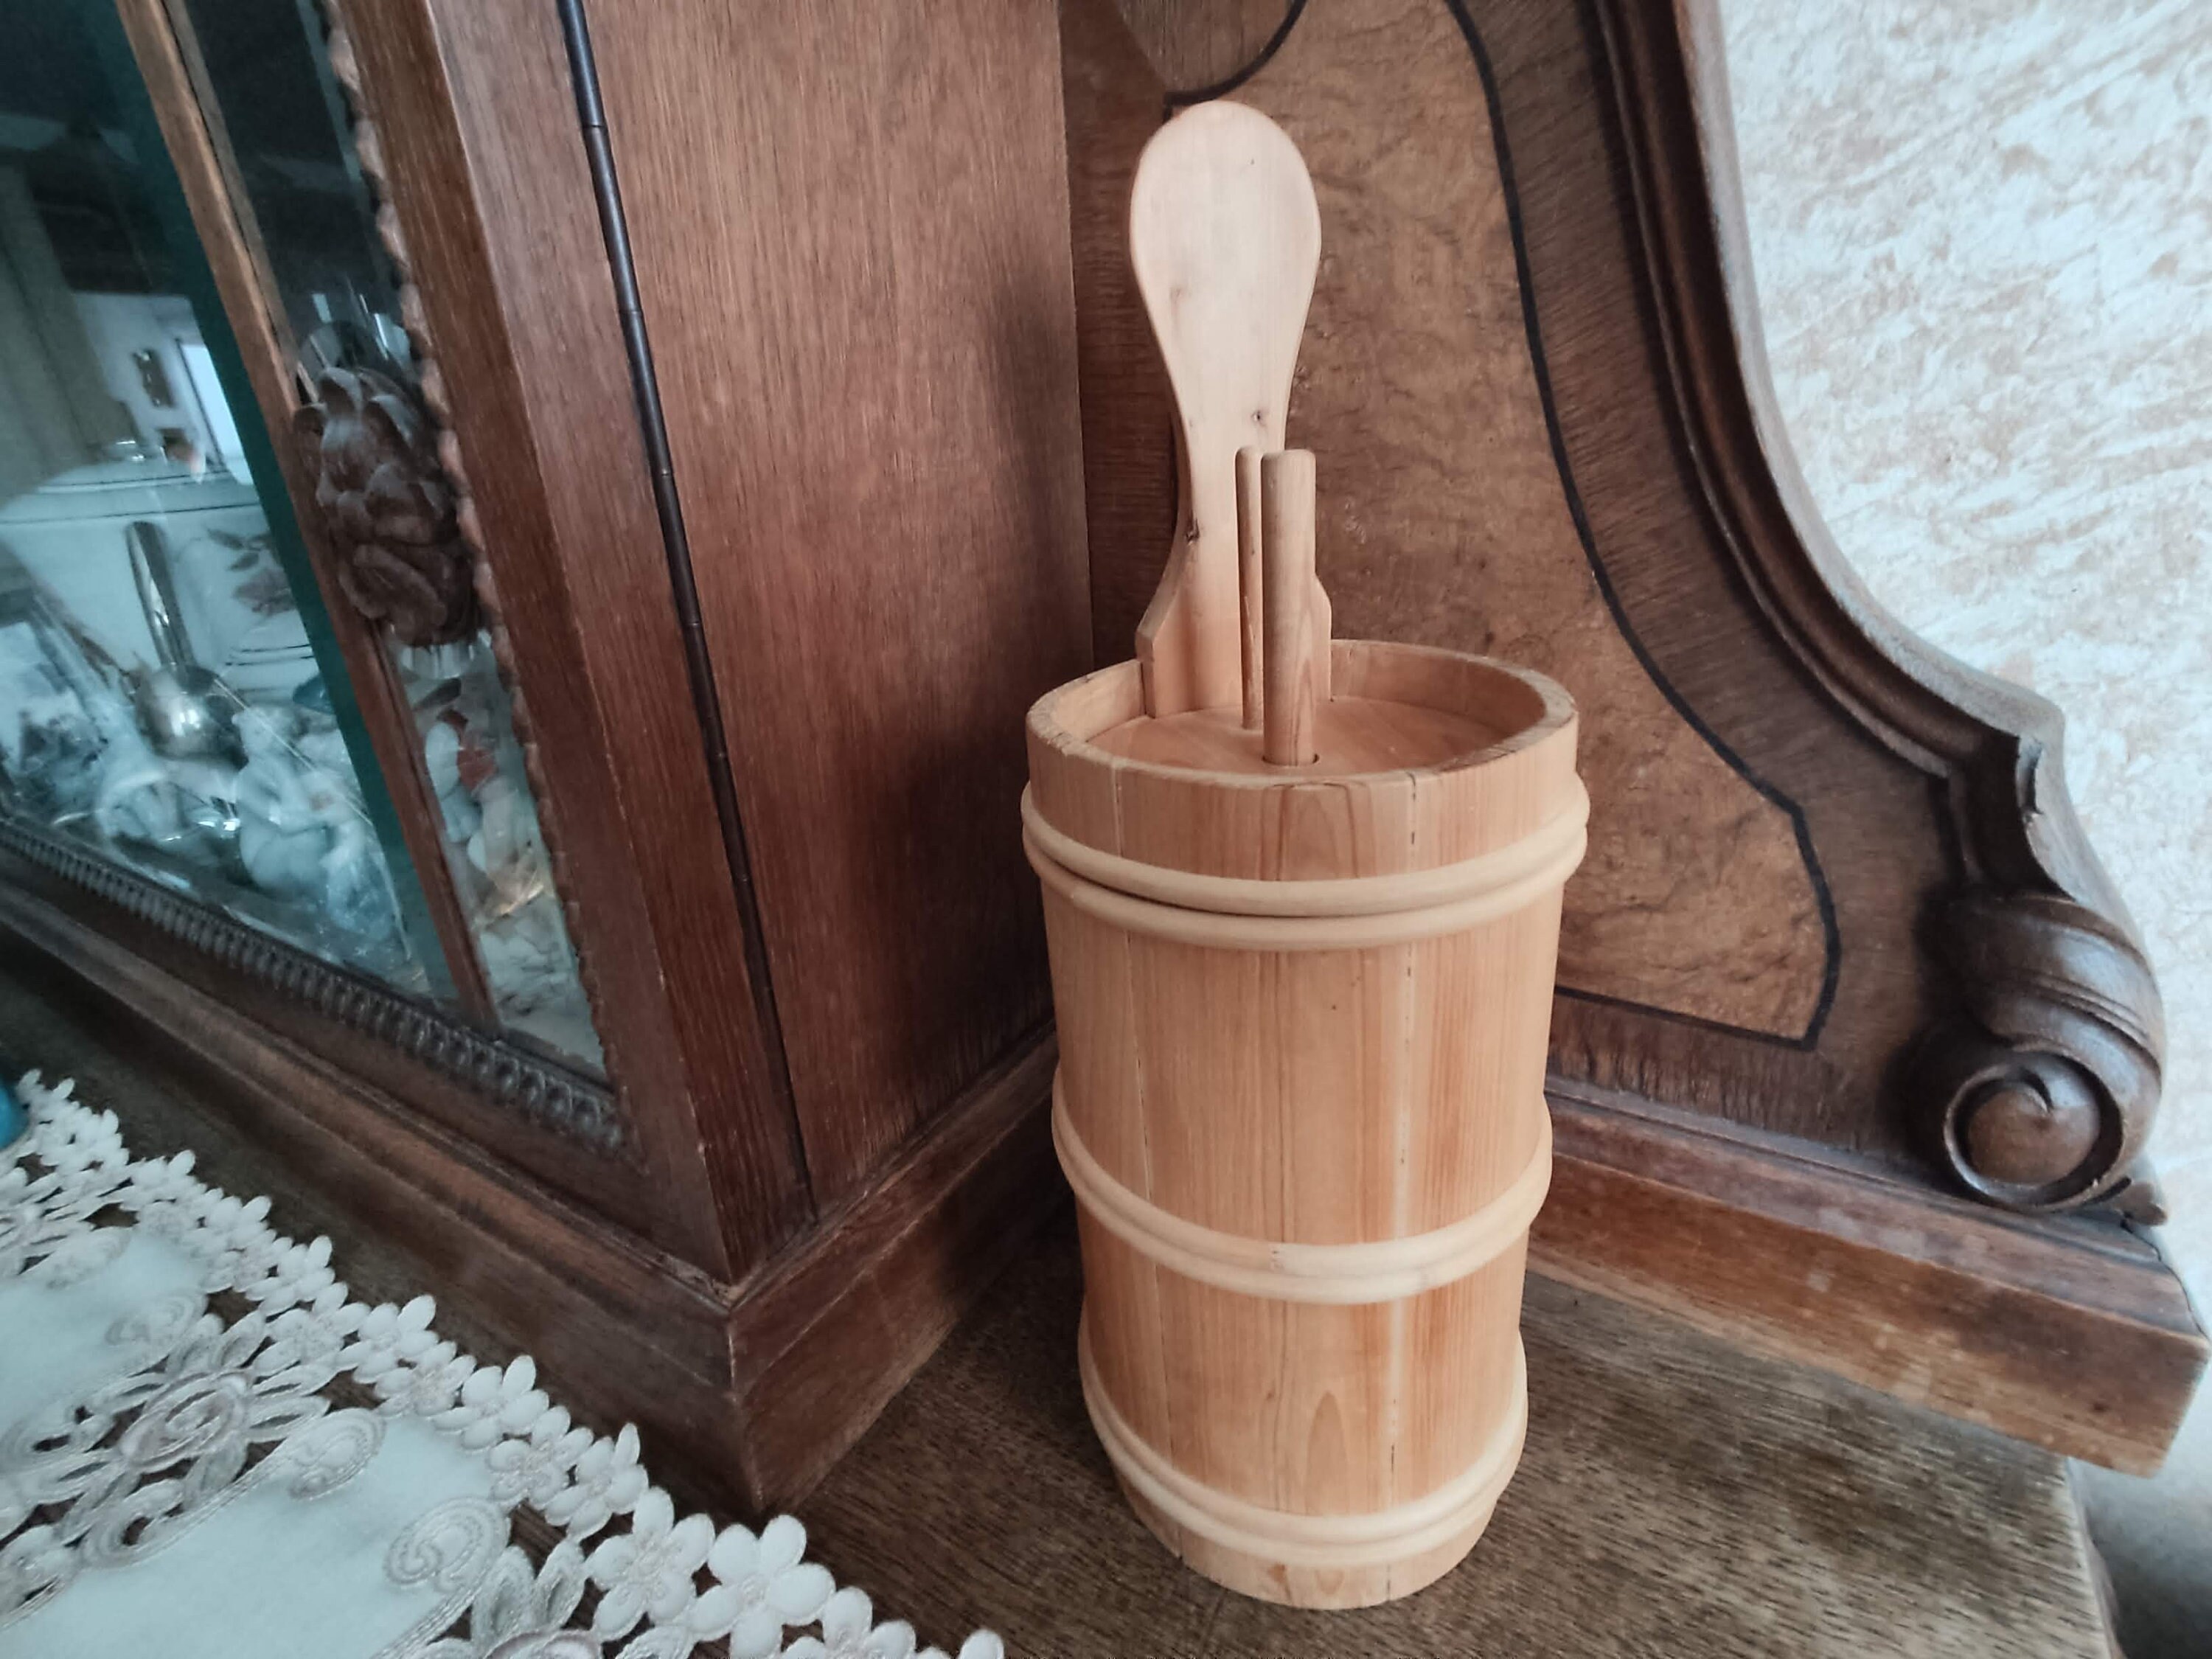 Wooden Plunger Butter Churn Handmade 2 Liters 2.1 Qt Natural Wood